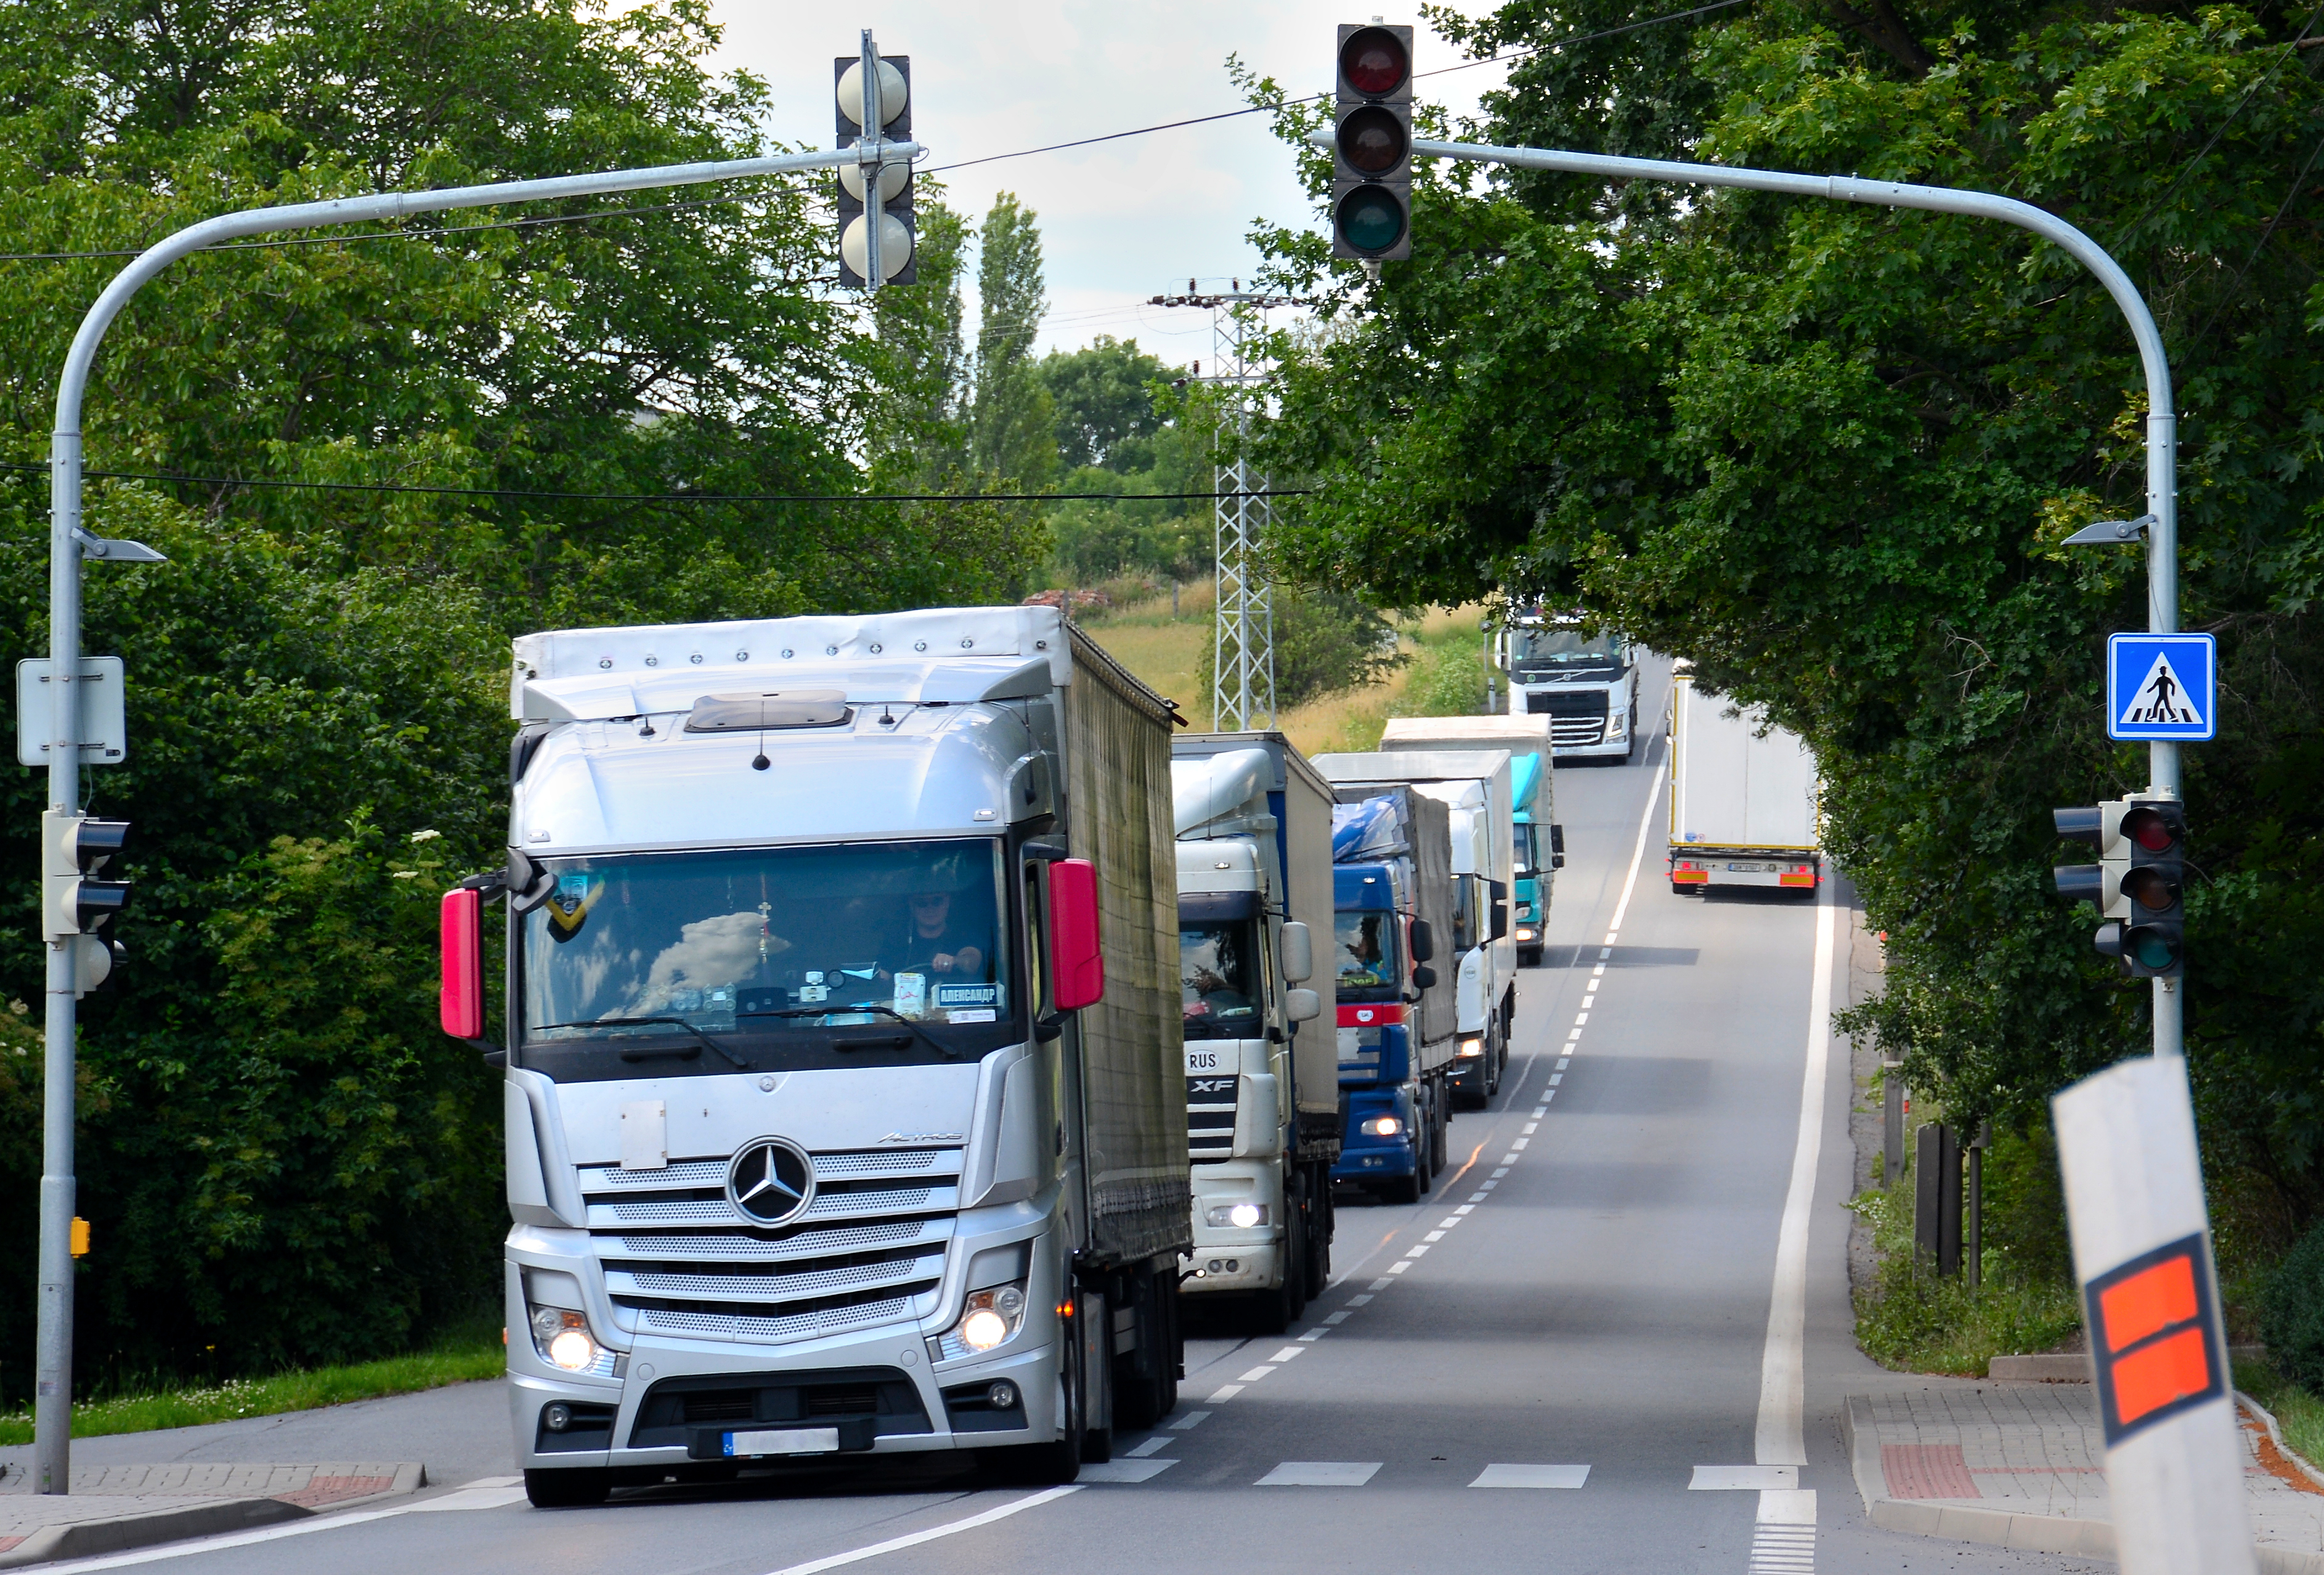 Ministerstvo může řidičům kamionů mimořádně umožnit jízdu s volnějším režimem přestávek